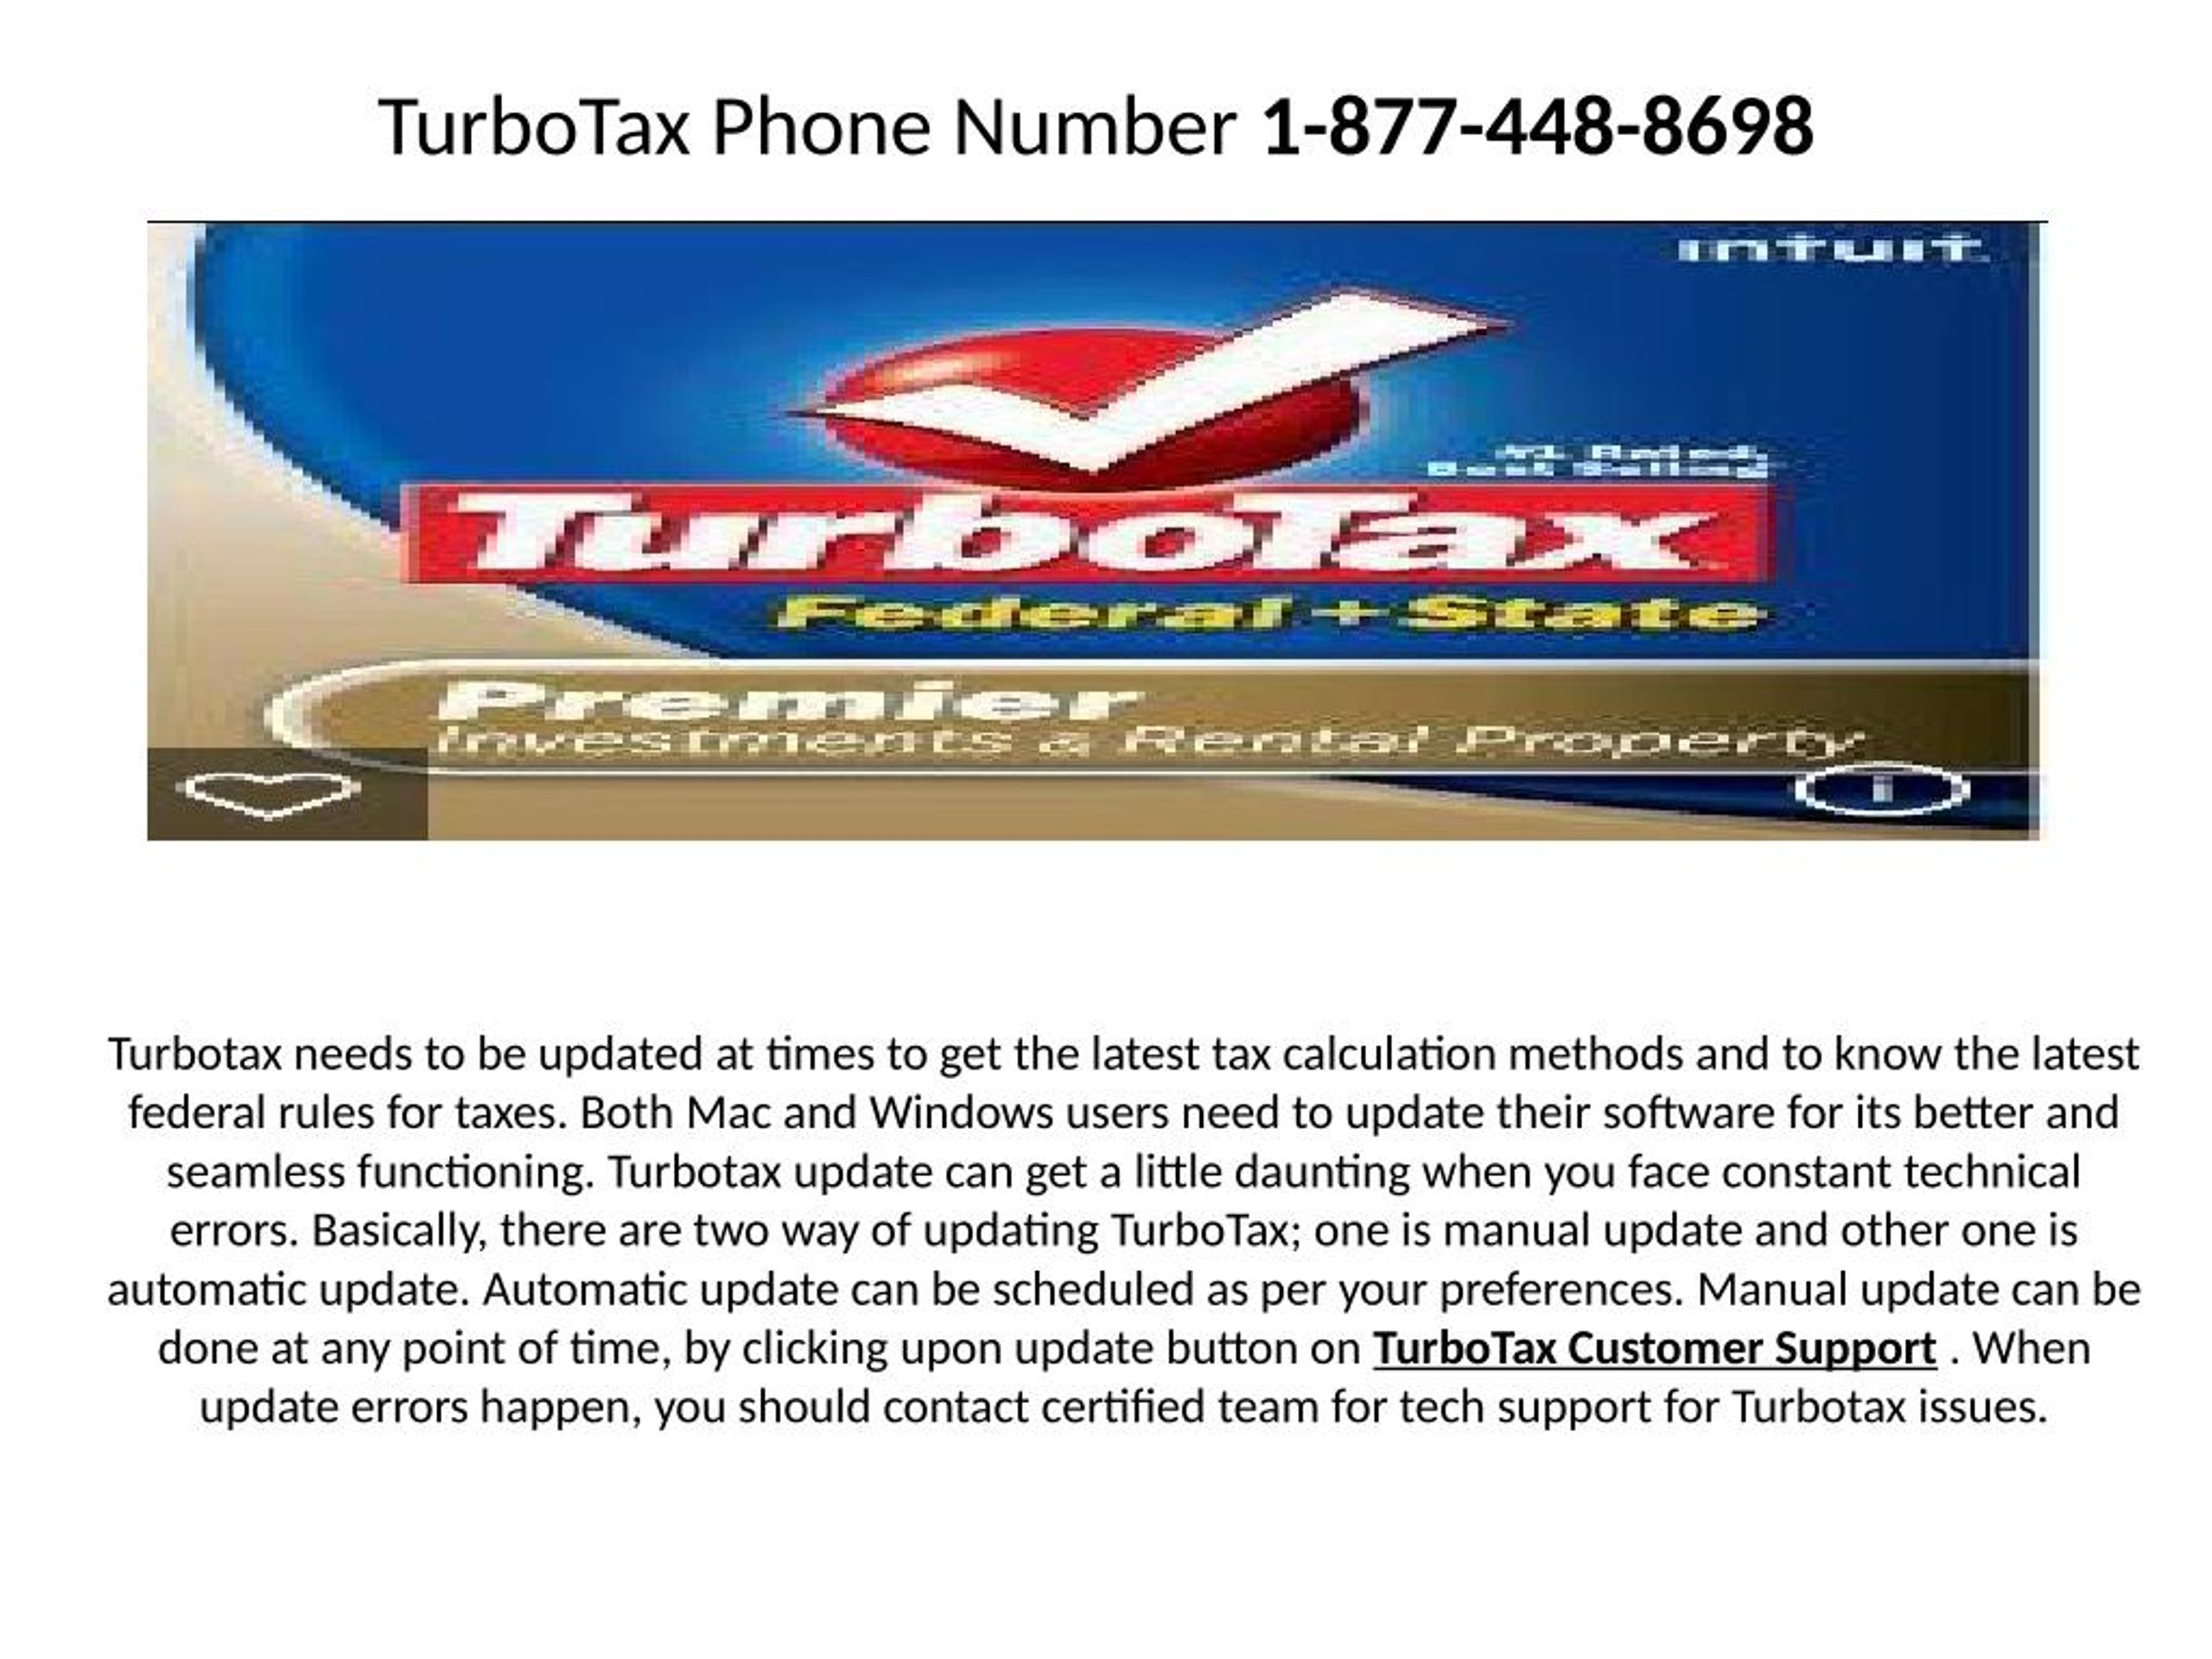 turbotax help numbers